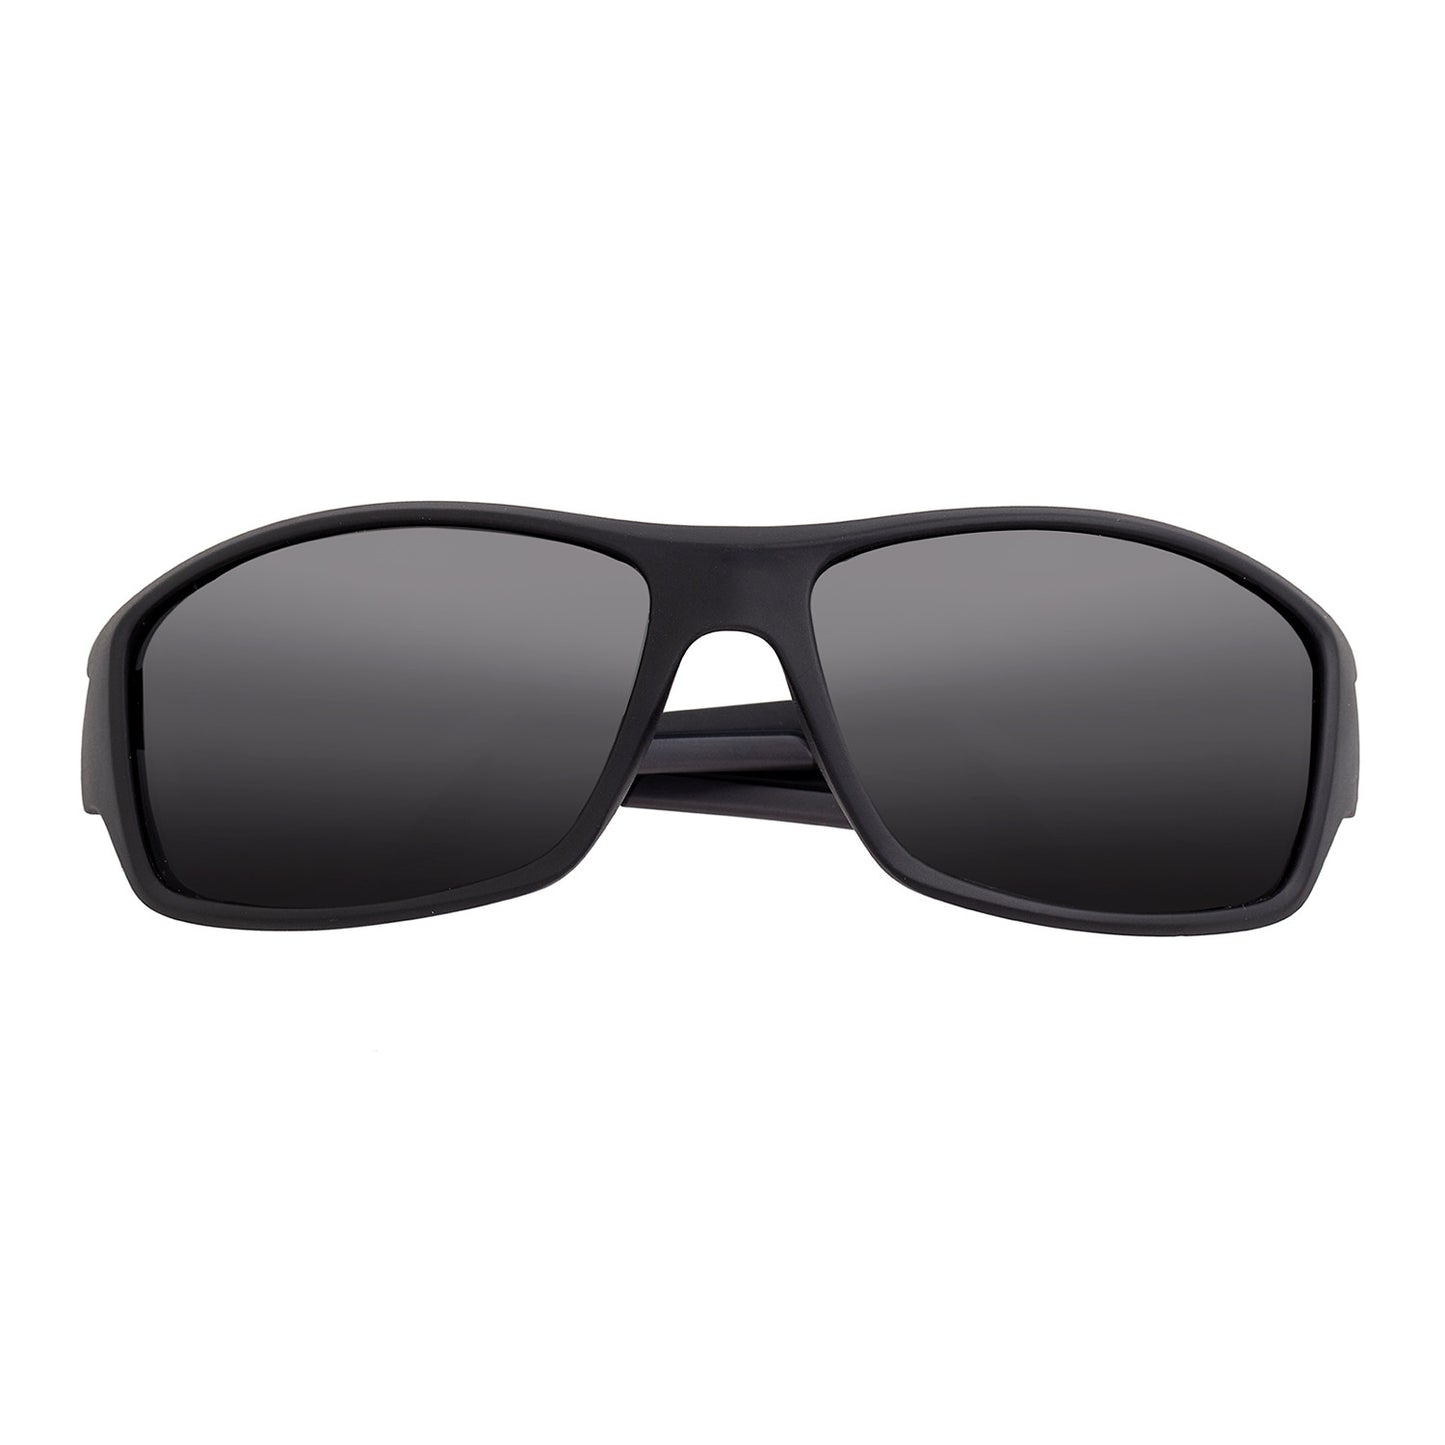 Aquarius Polarized Sunglasses - Black